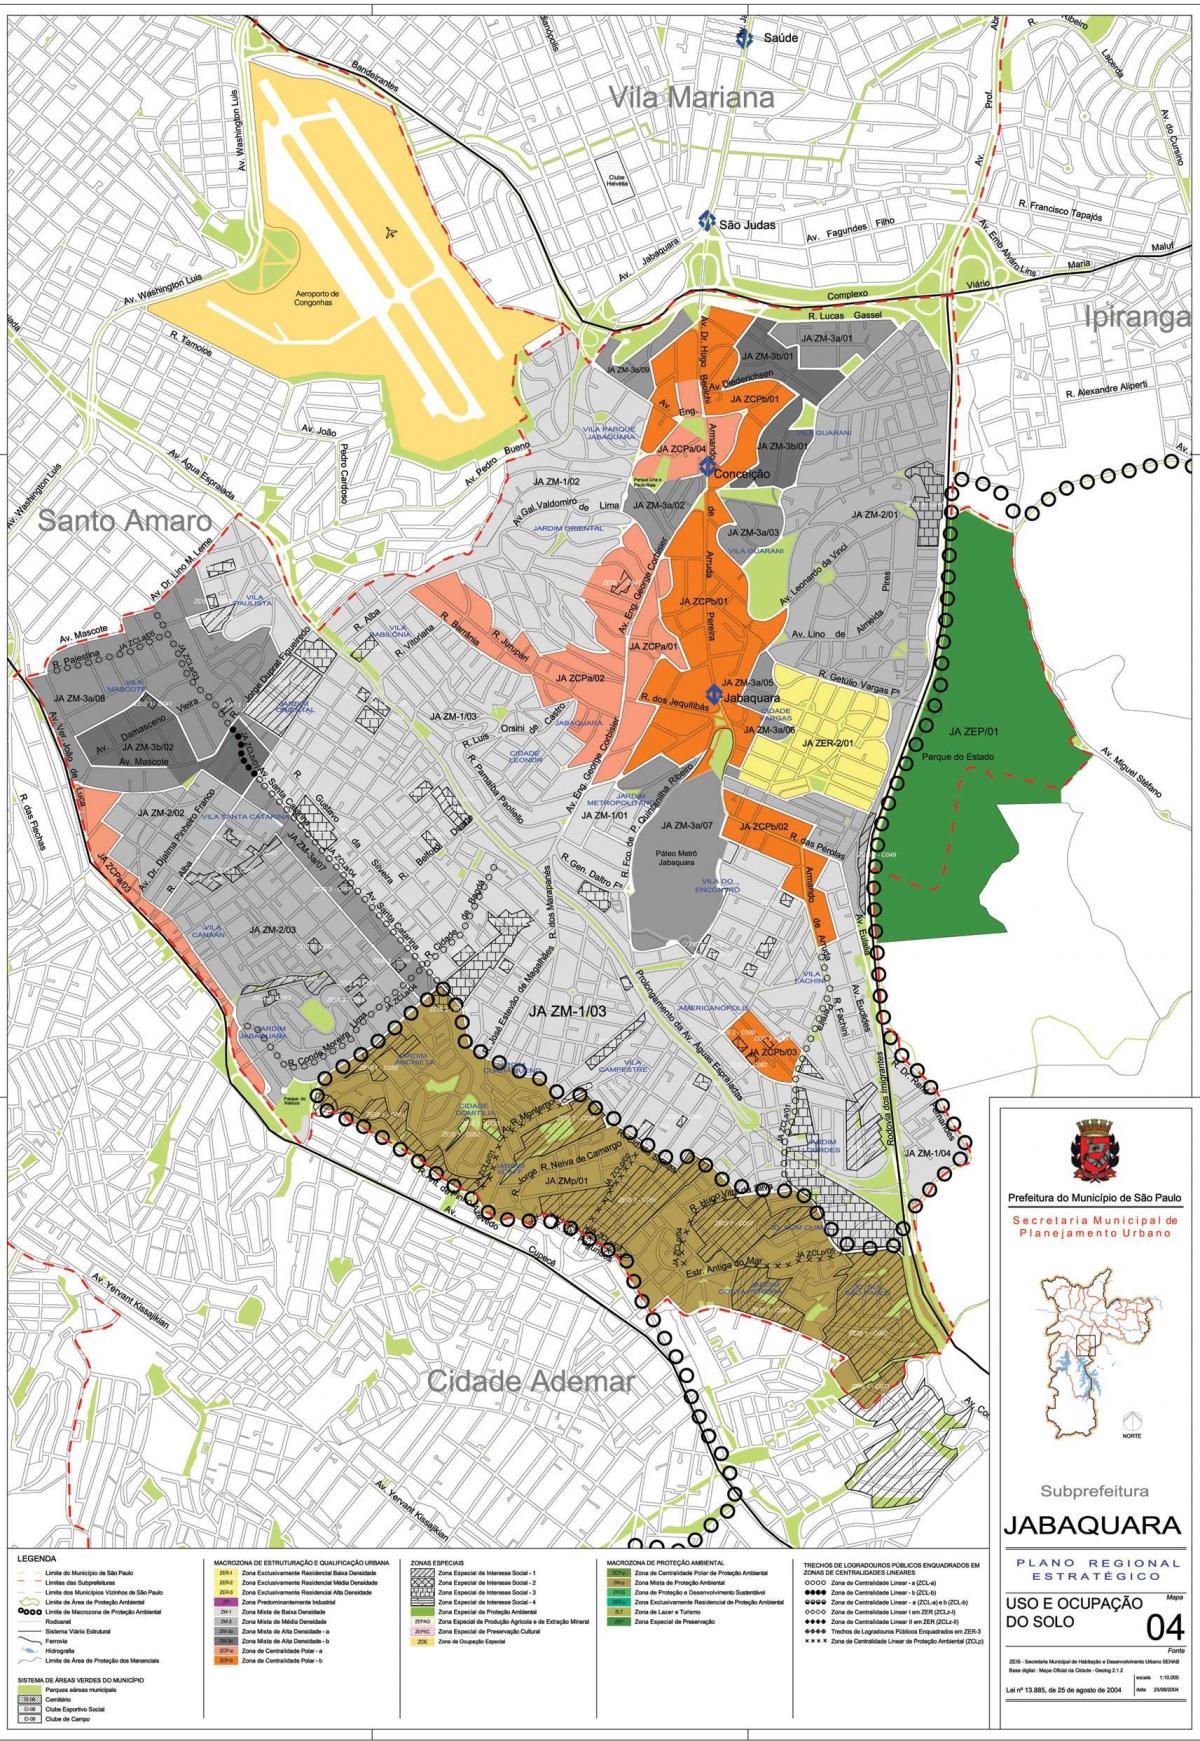 Mapa do Jabaquara-São Paulo - Ocupação do solo